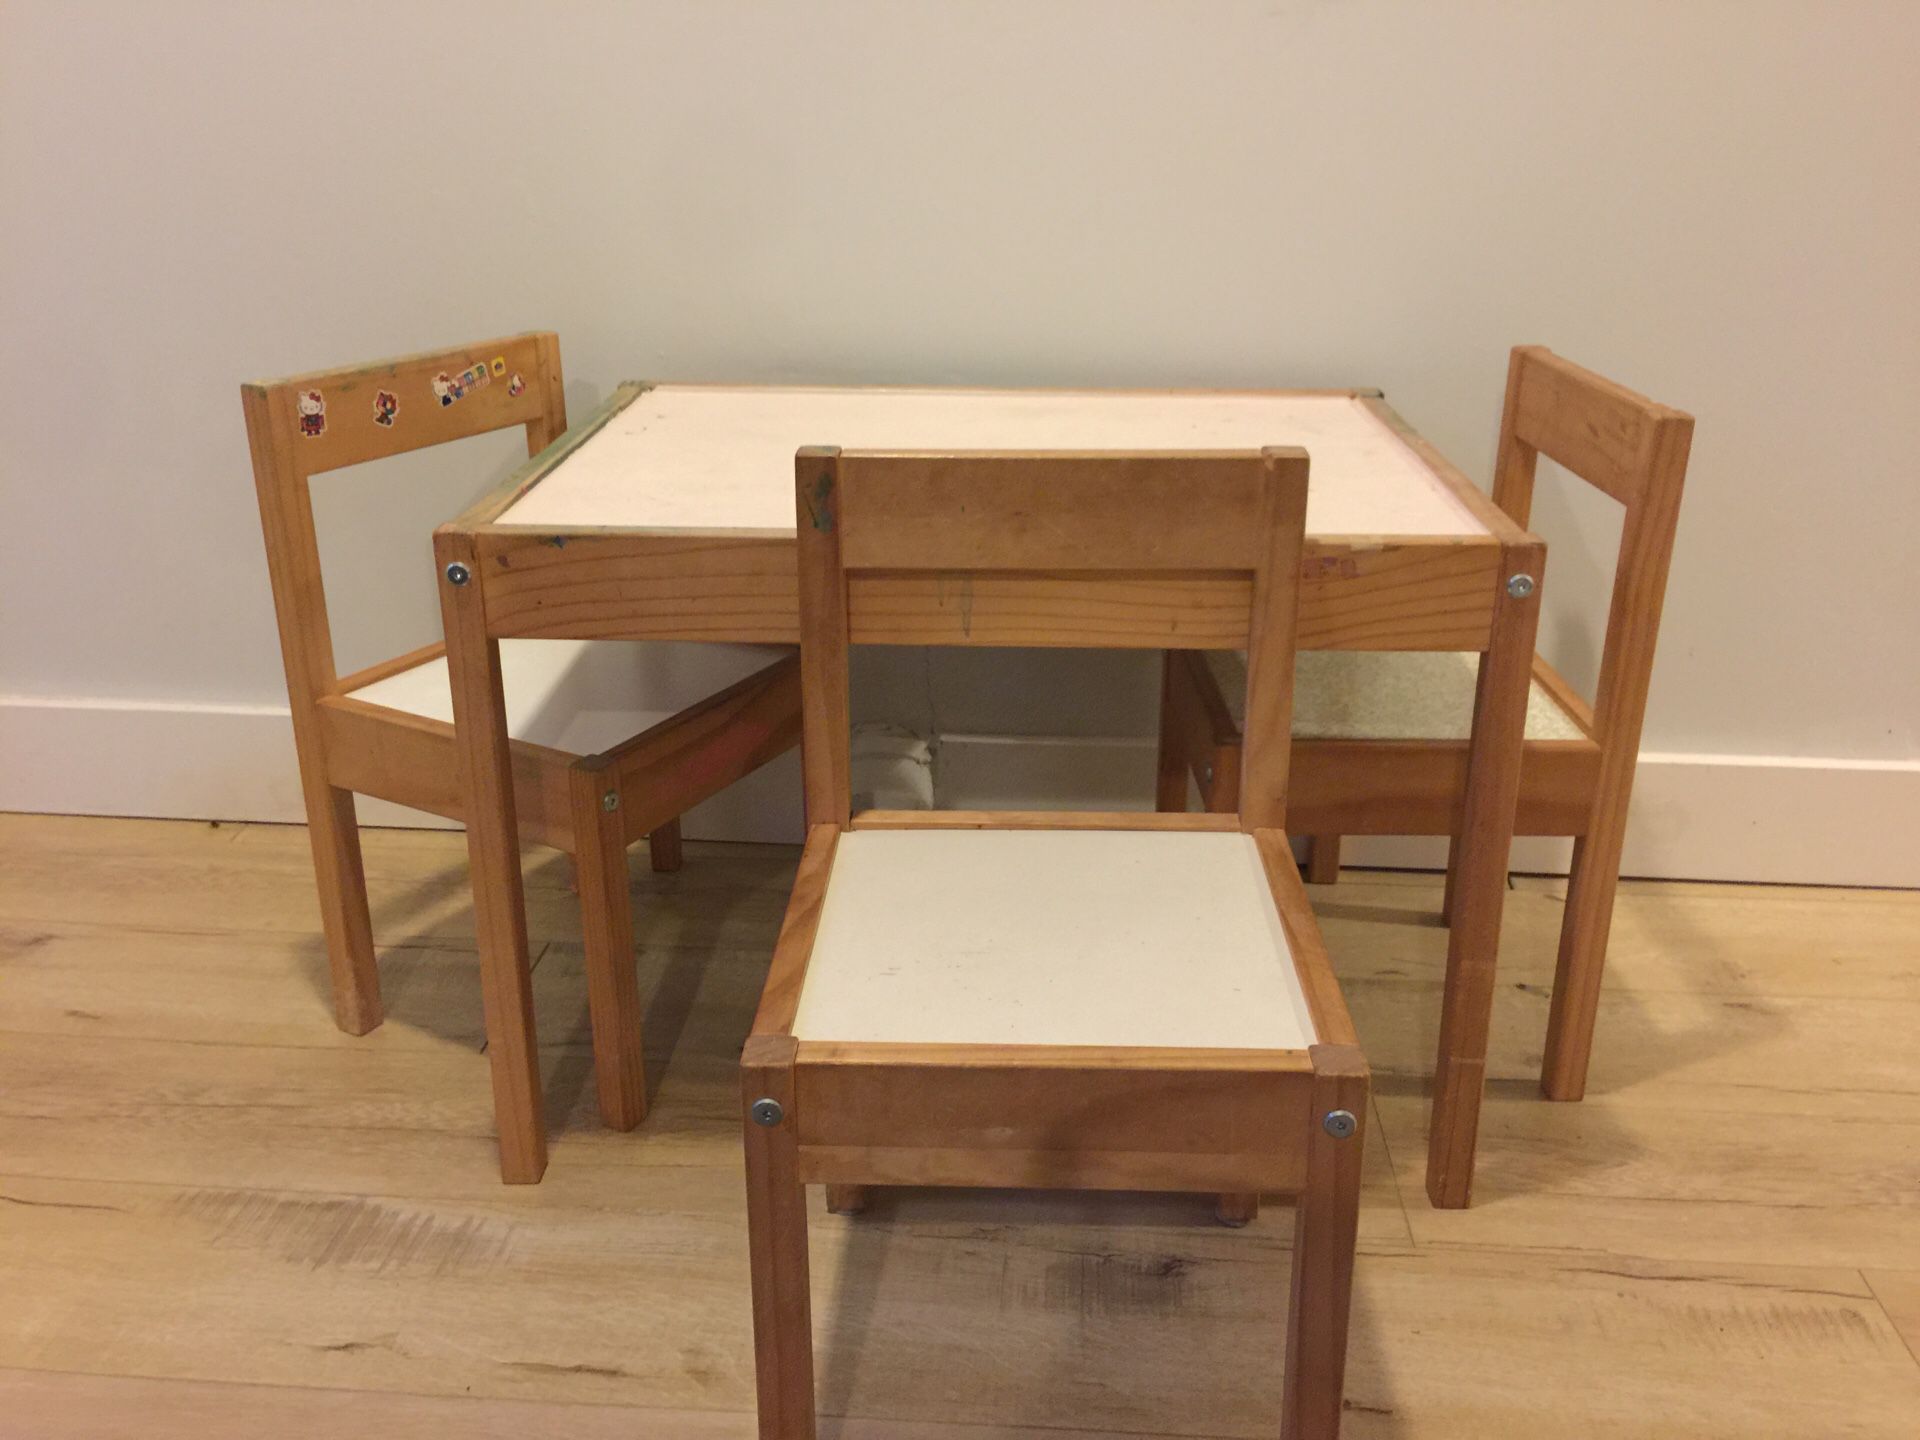 IKEA kids table- Latt